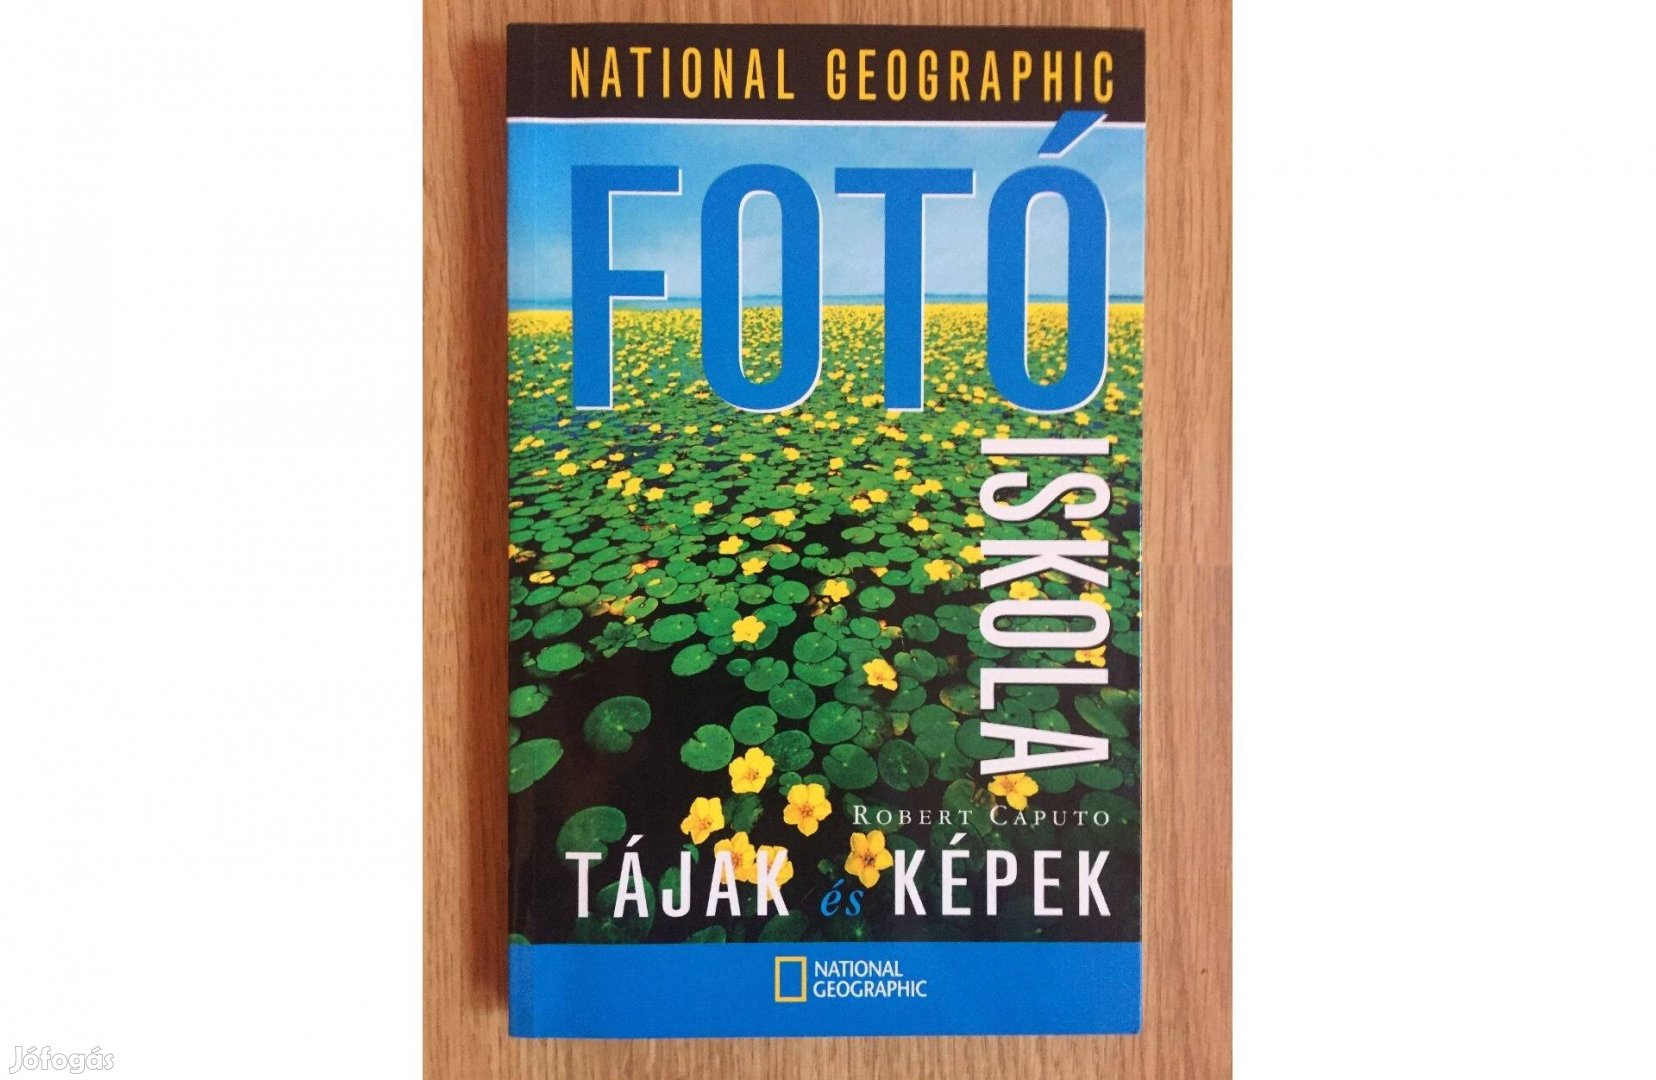 National Geographic fotó iskola tájak és képek c. könyv